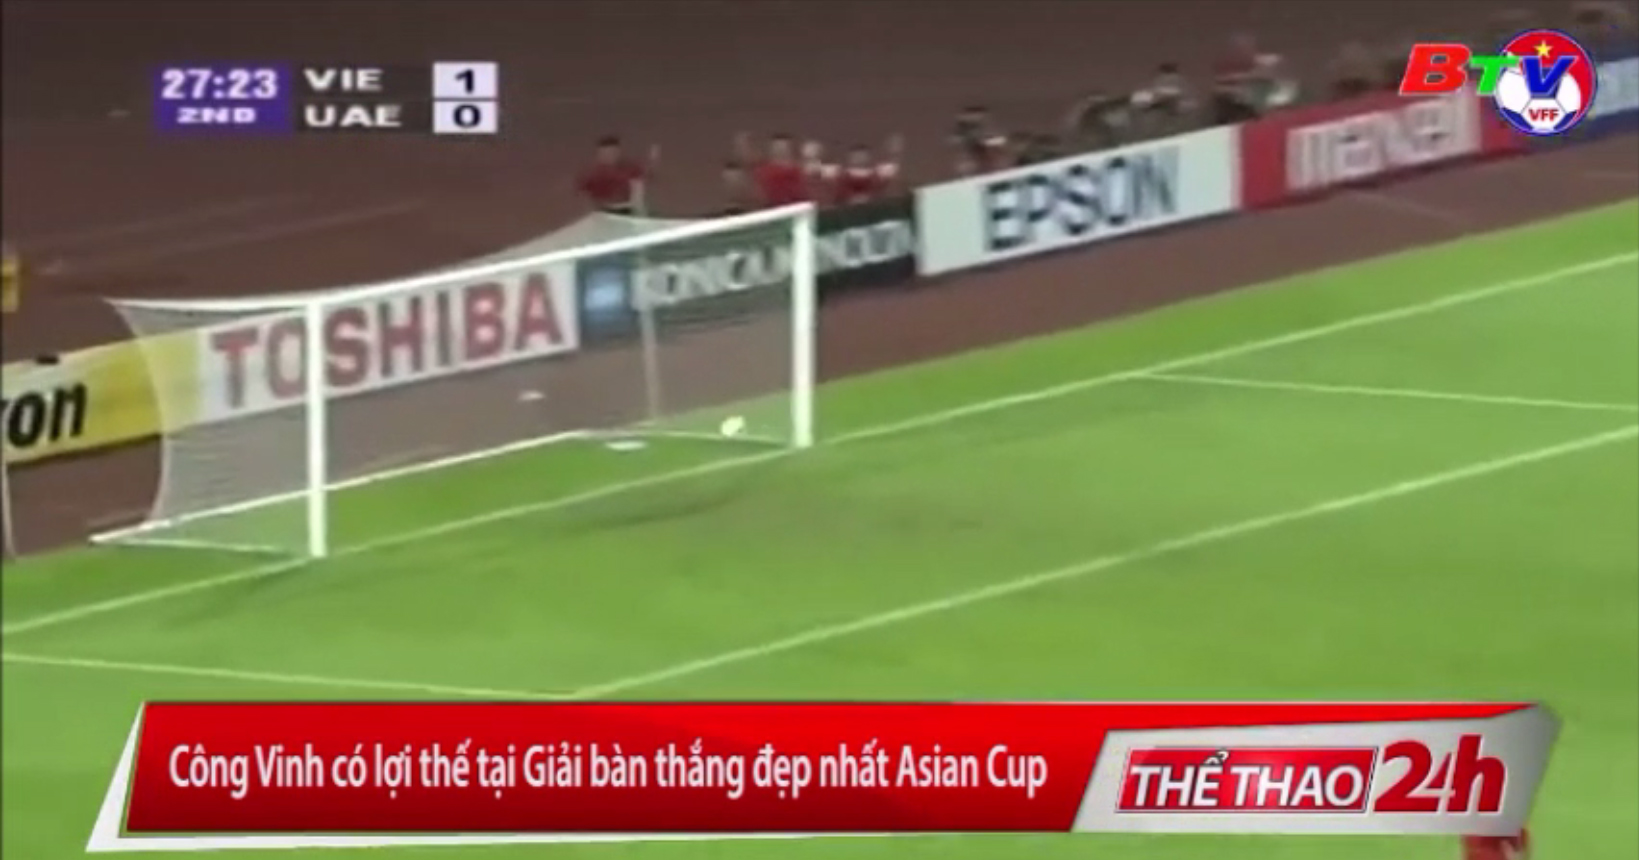 Công Vinh có lợi thế tại Giải bàn thắng đẹp nhất Asian Cup